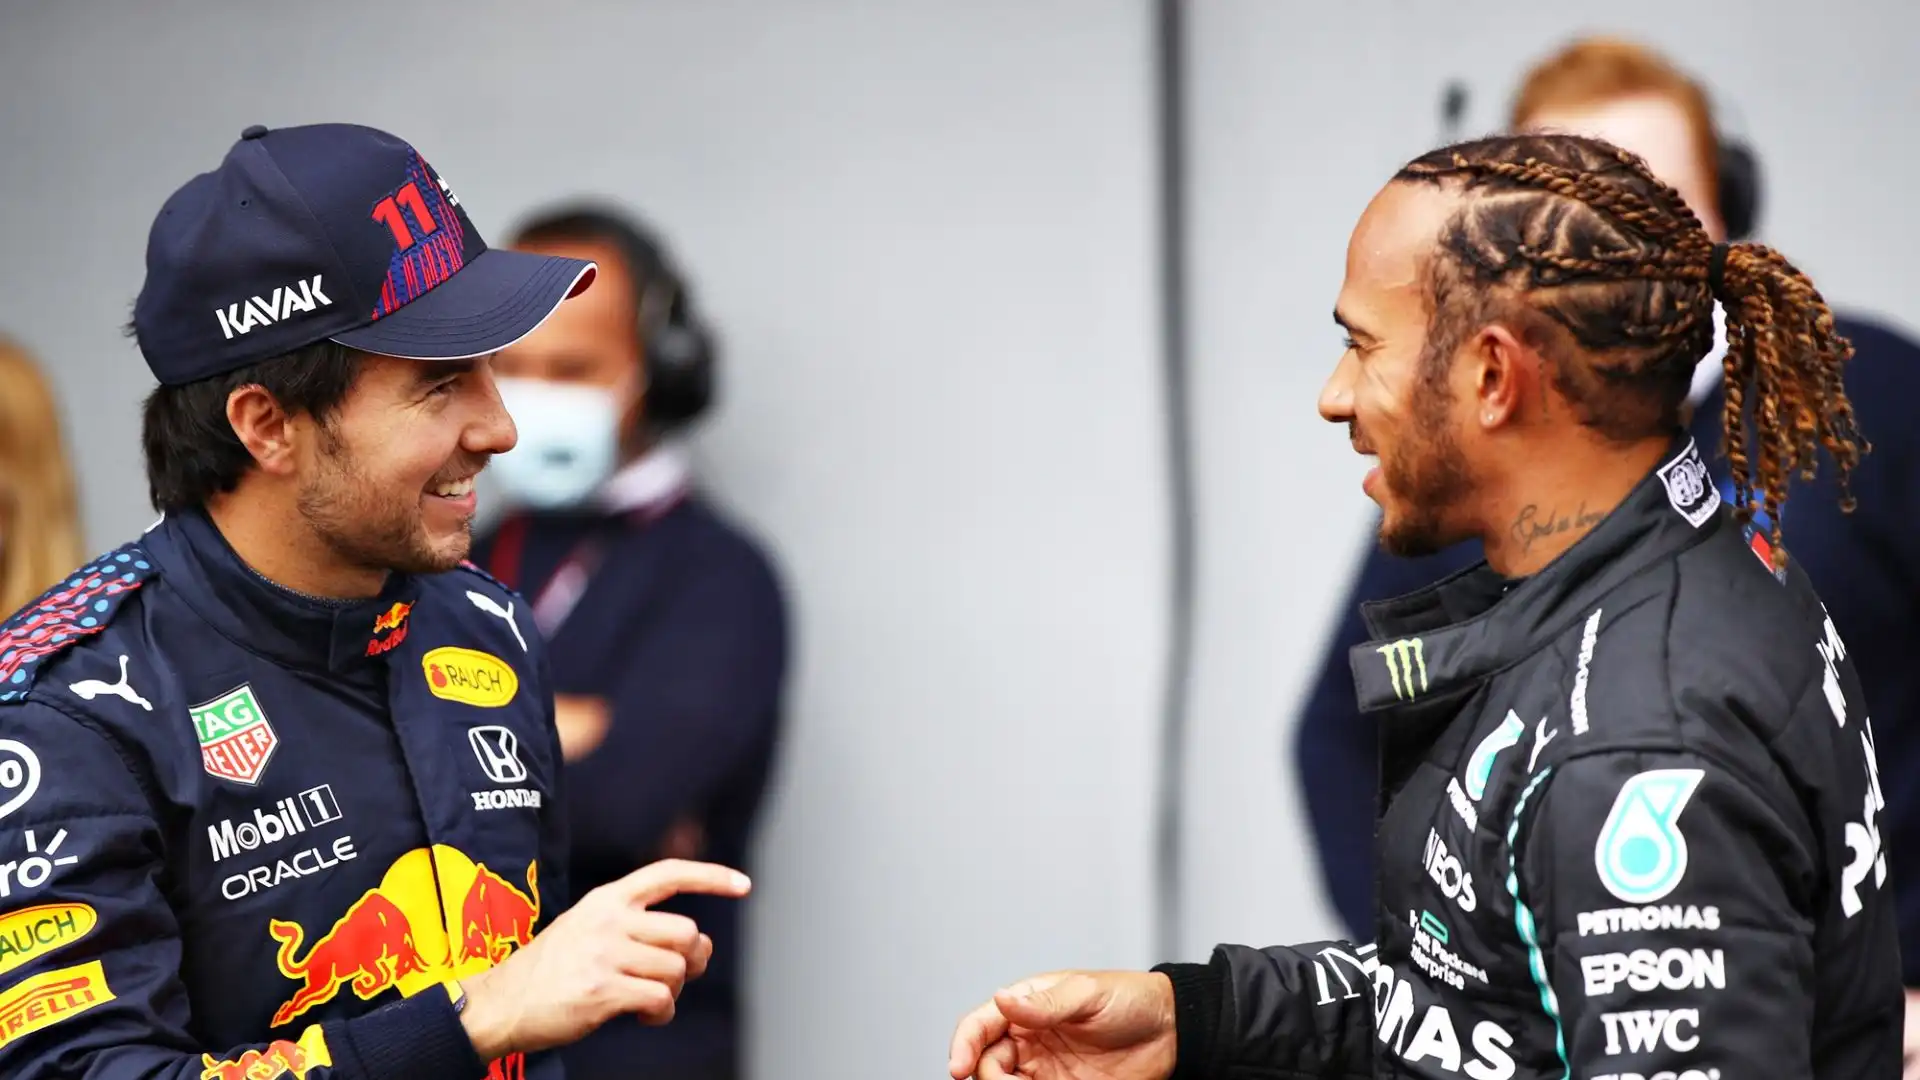 In Messico sono previste pesanti contestazioni a Verstappen, che secondo molti tifosi messicani è favorito dalla Red Bull rispetto a Perez